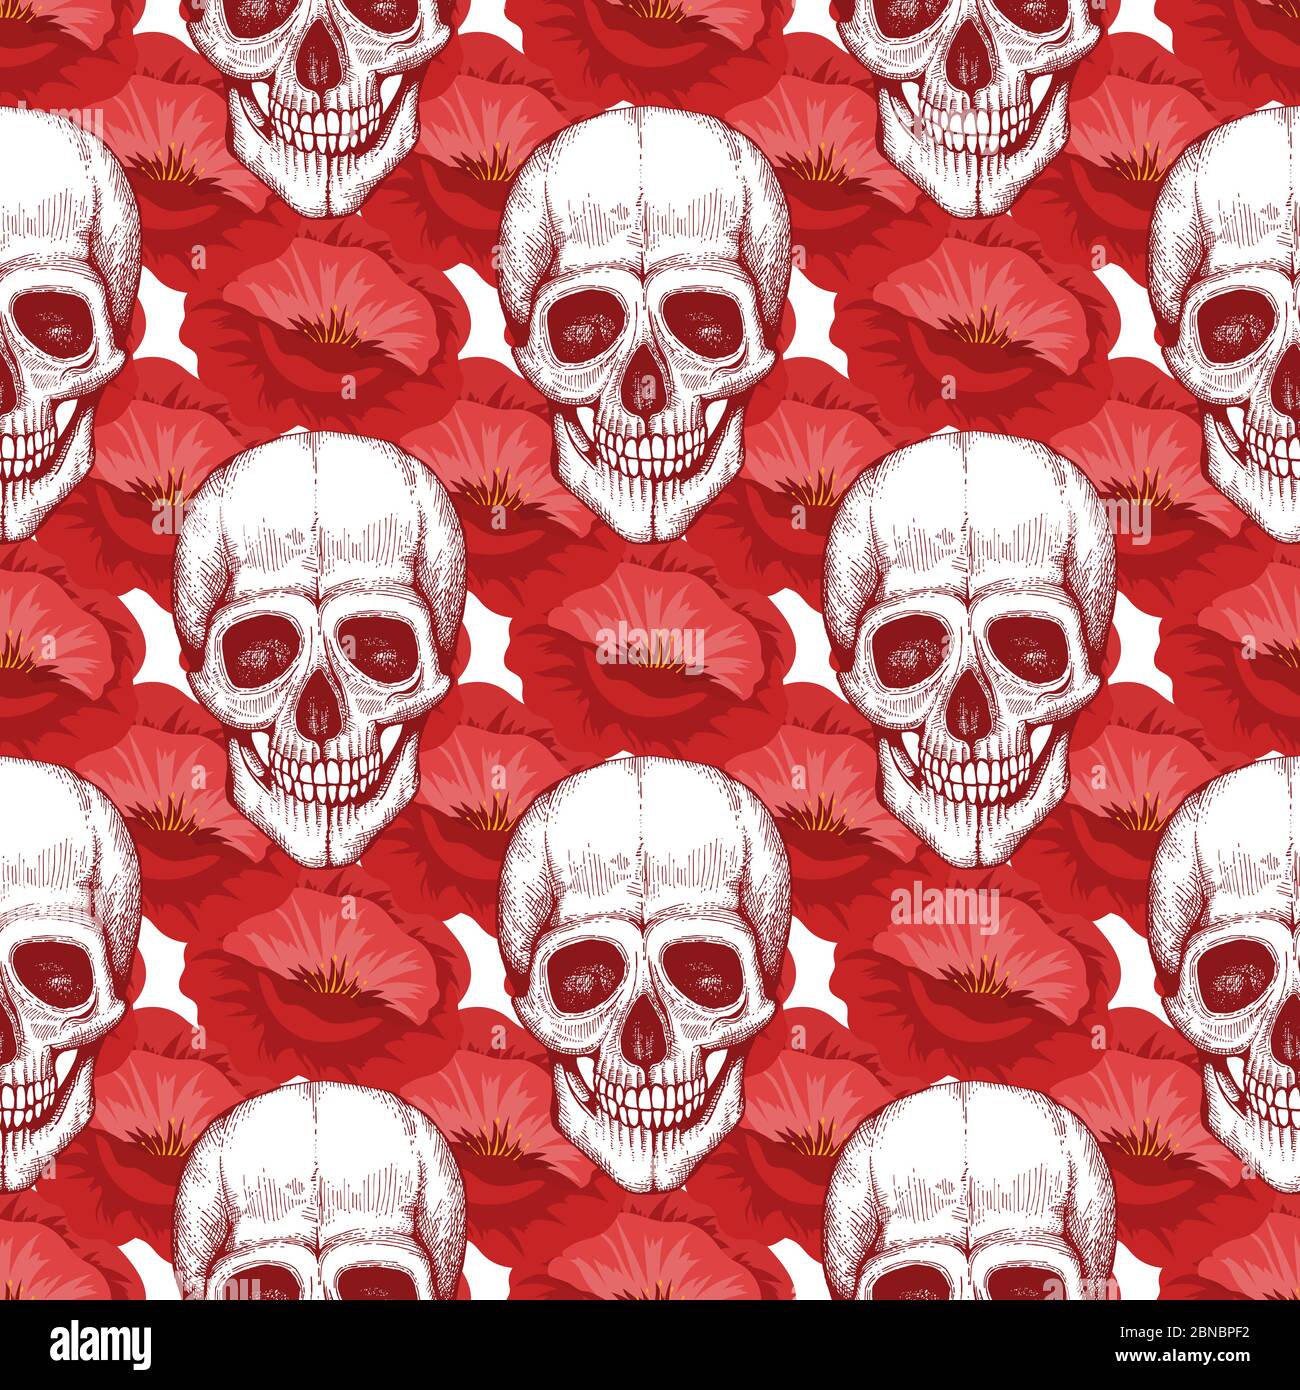 Menschliche Schädel Skizze und roten Mohn Blumen nahtlose Muster Illustration Hintergrund Stock Vektor